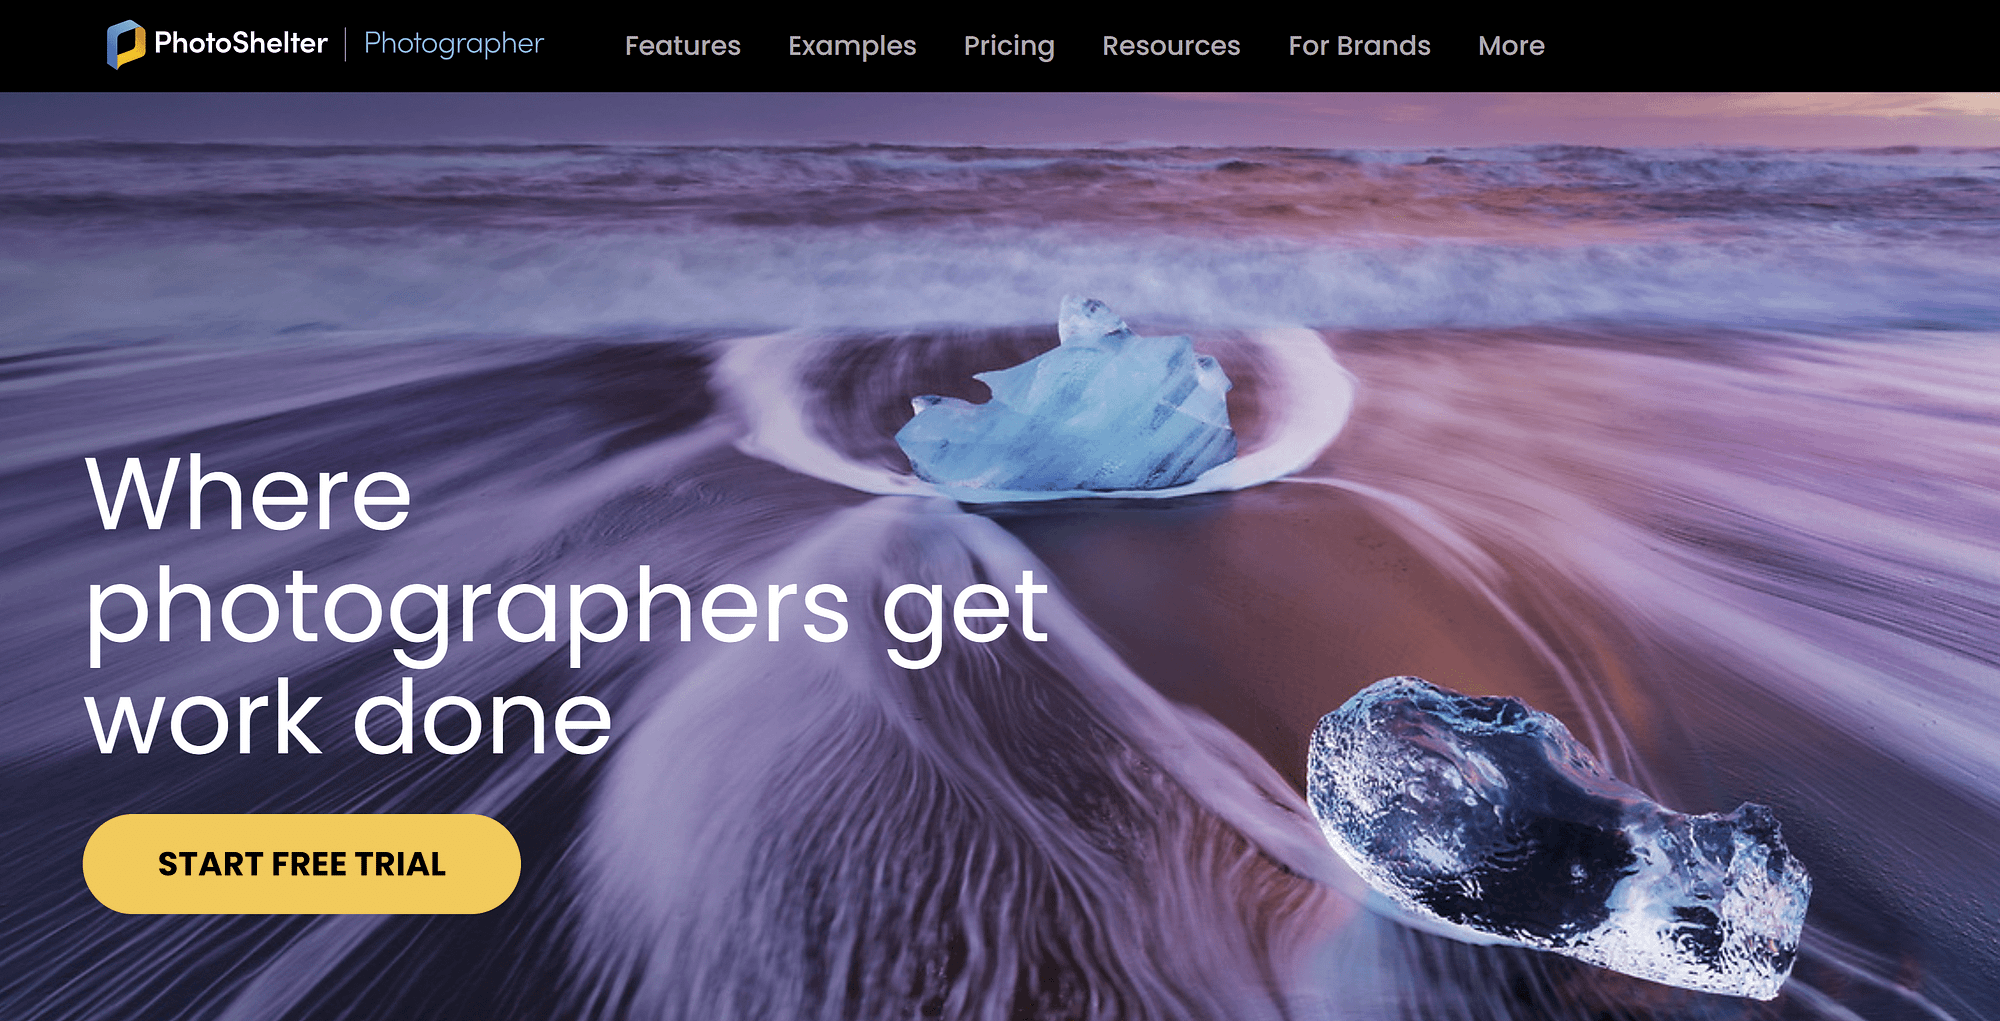 Один из вариантов лучшего конструктора сайтов для фотографов PhotoShelter.